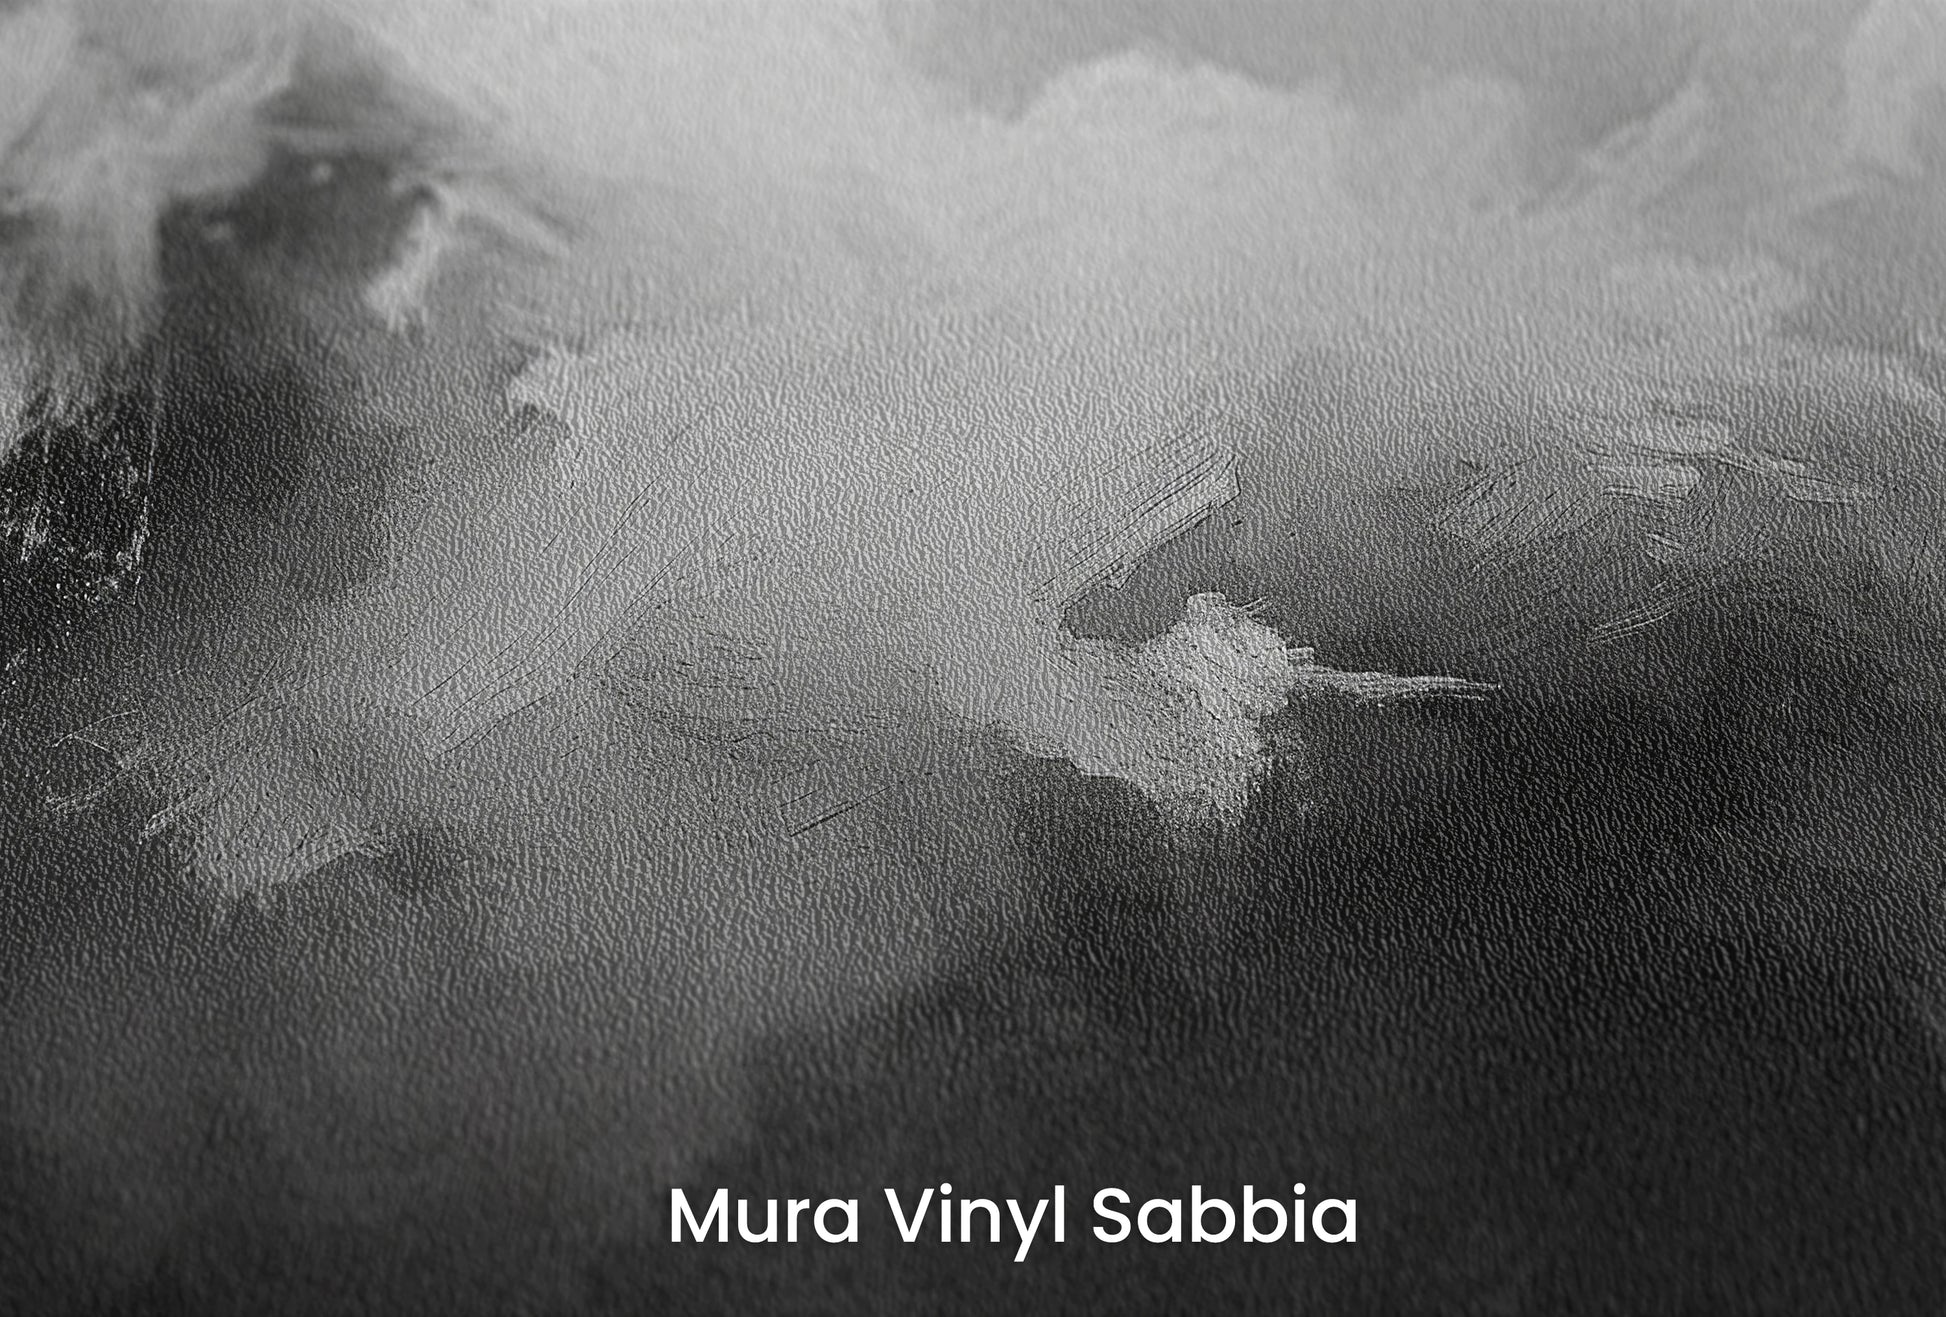 Zbliżenie na artystyczną fototapetę o nazwie Ethereal Forms na podłożu Mura Vinyl Sabbia struktura grubego ziarna piasku.